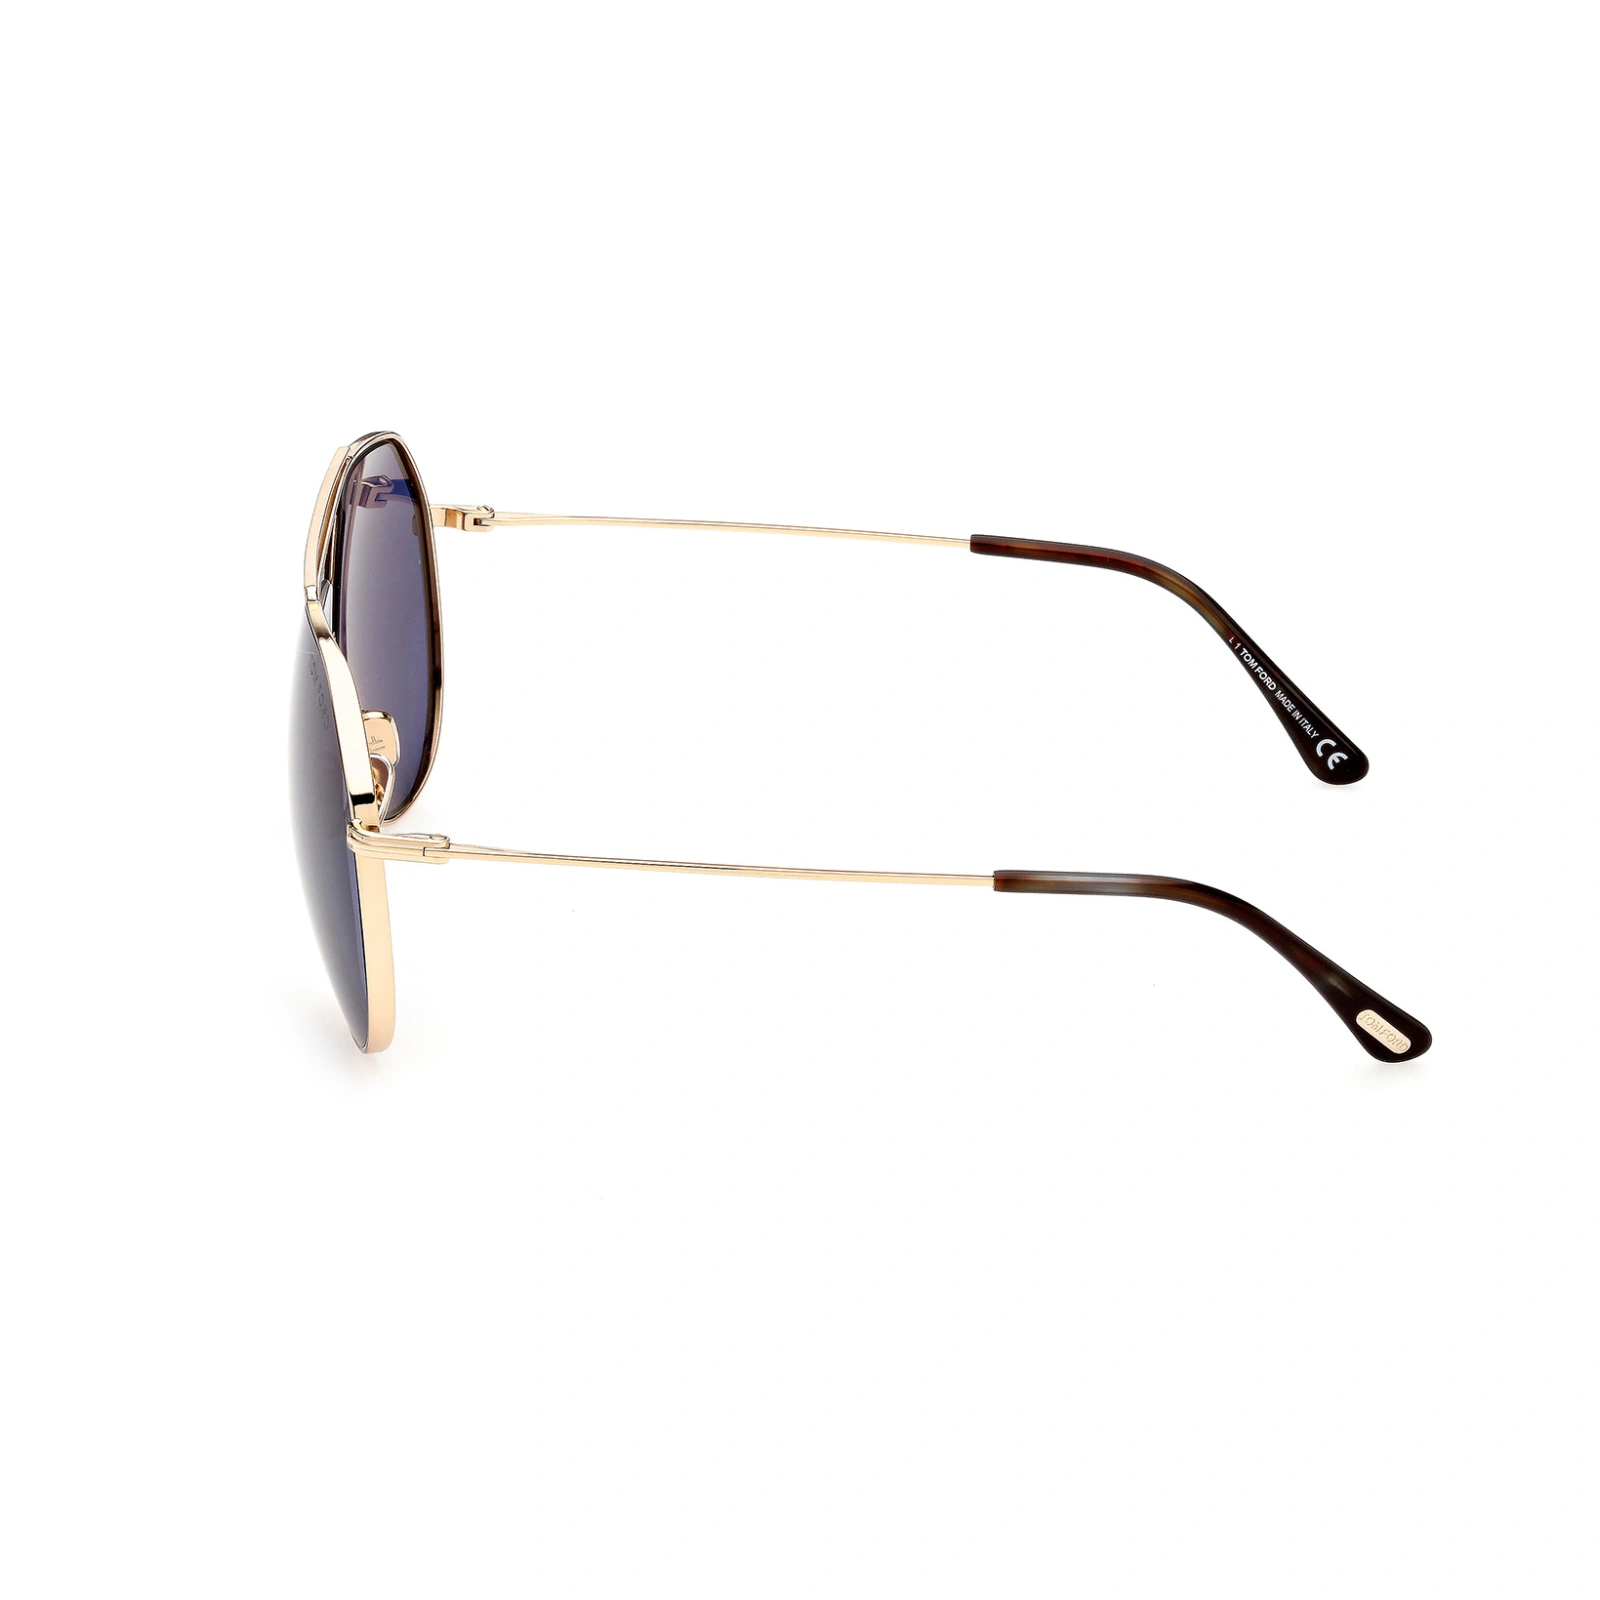 Tom Ford Sunglasses Tom Ford Sunglasses FT0926 28V 61mm Clyde Eyeglasses Eyewear UK USA Australia 